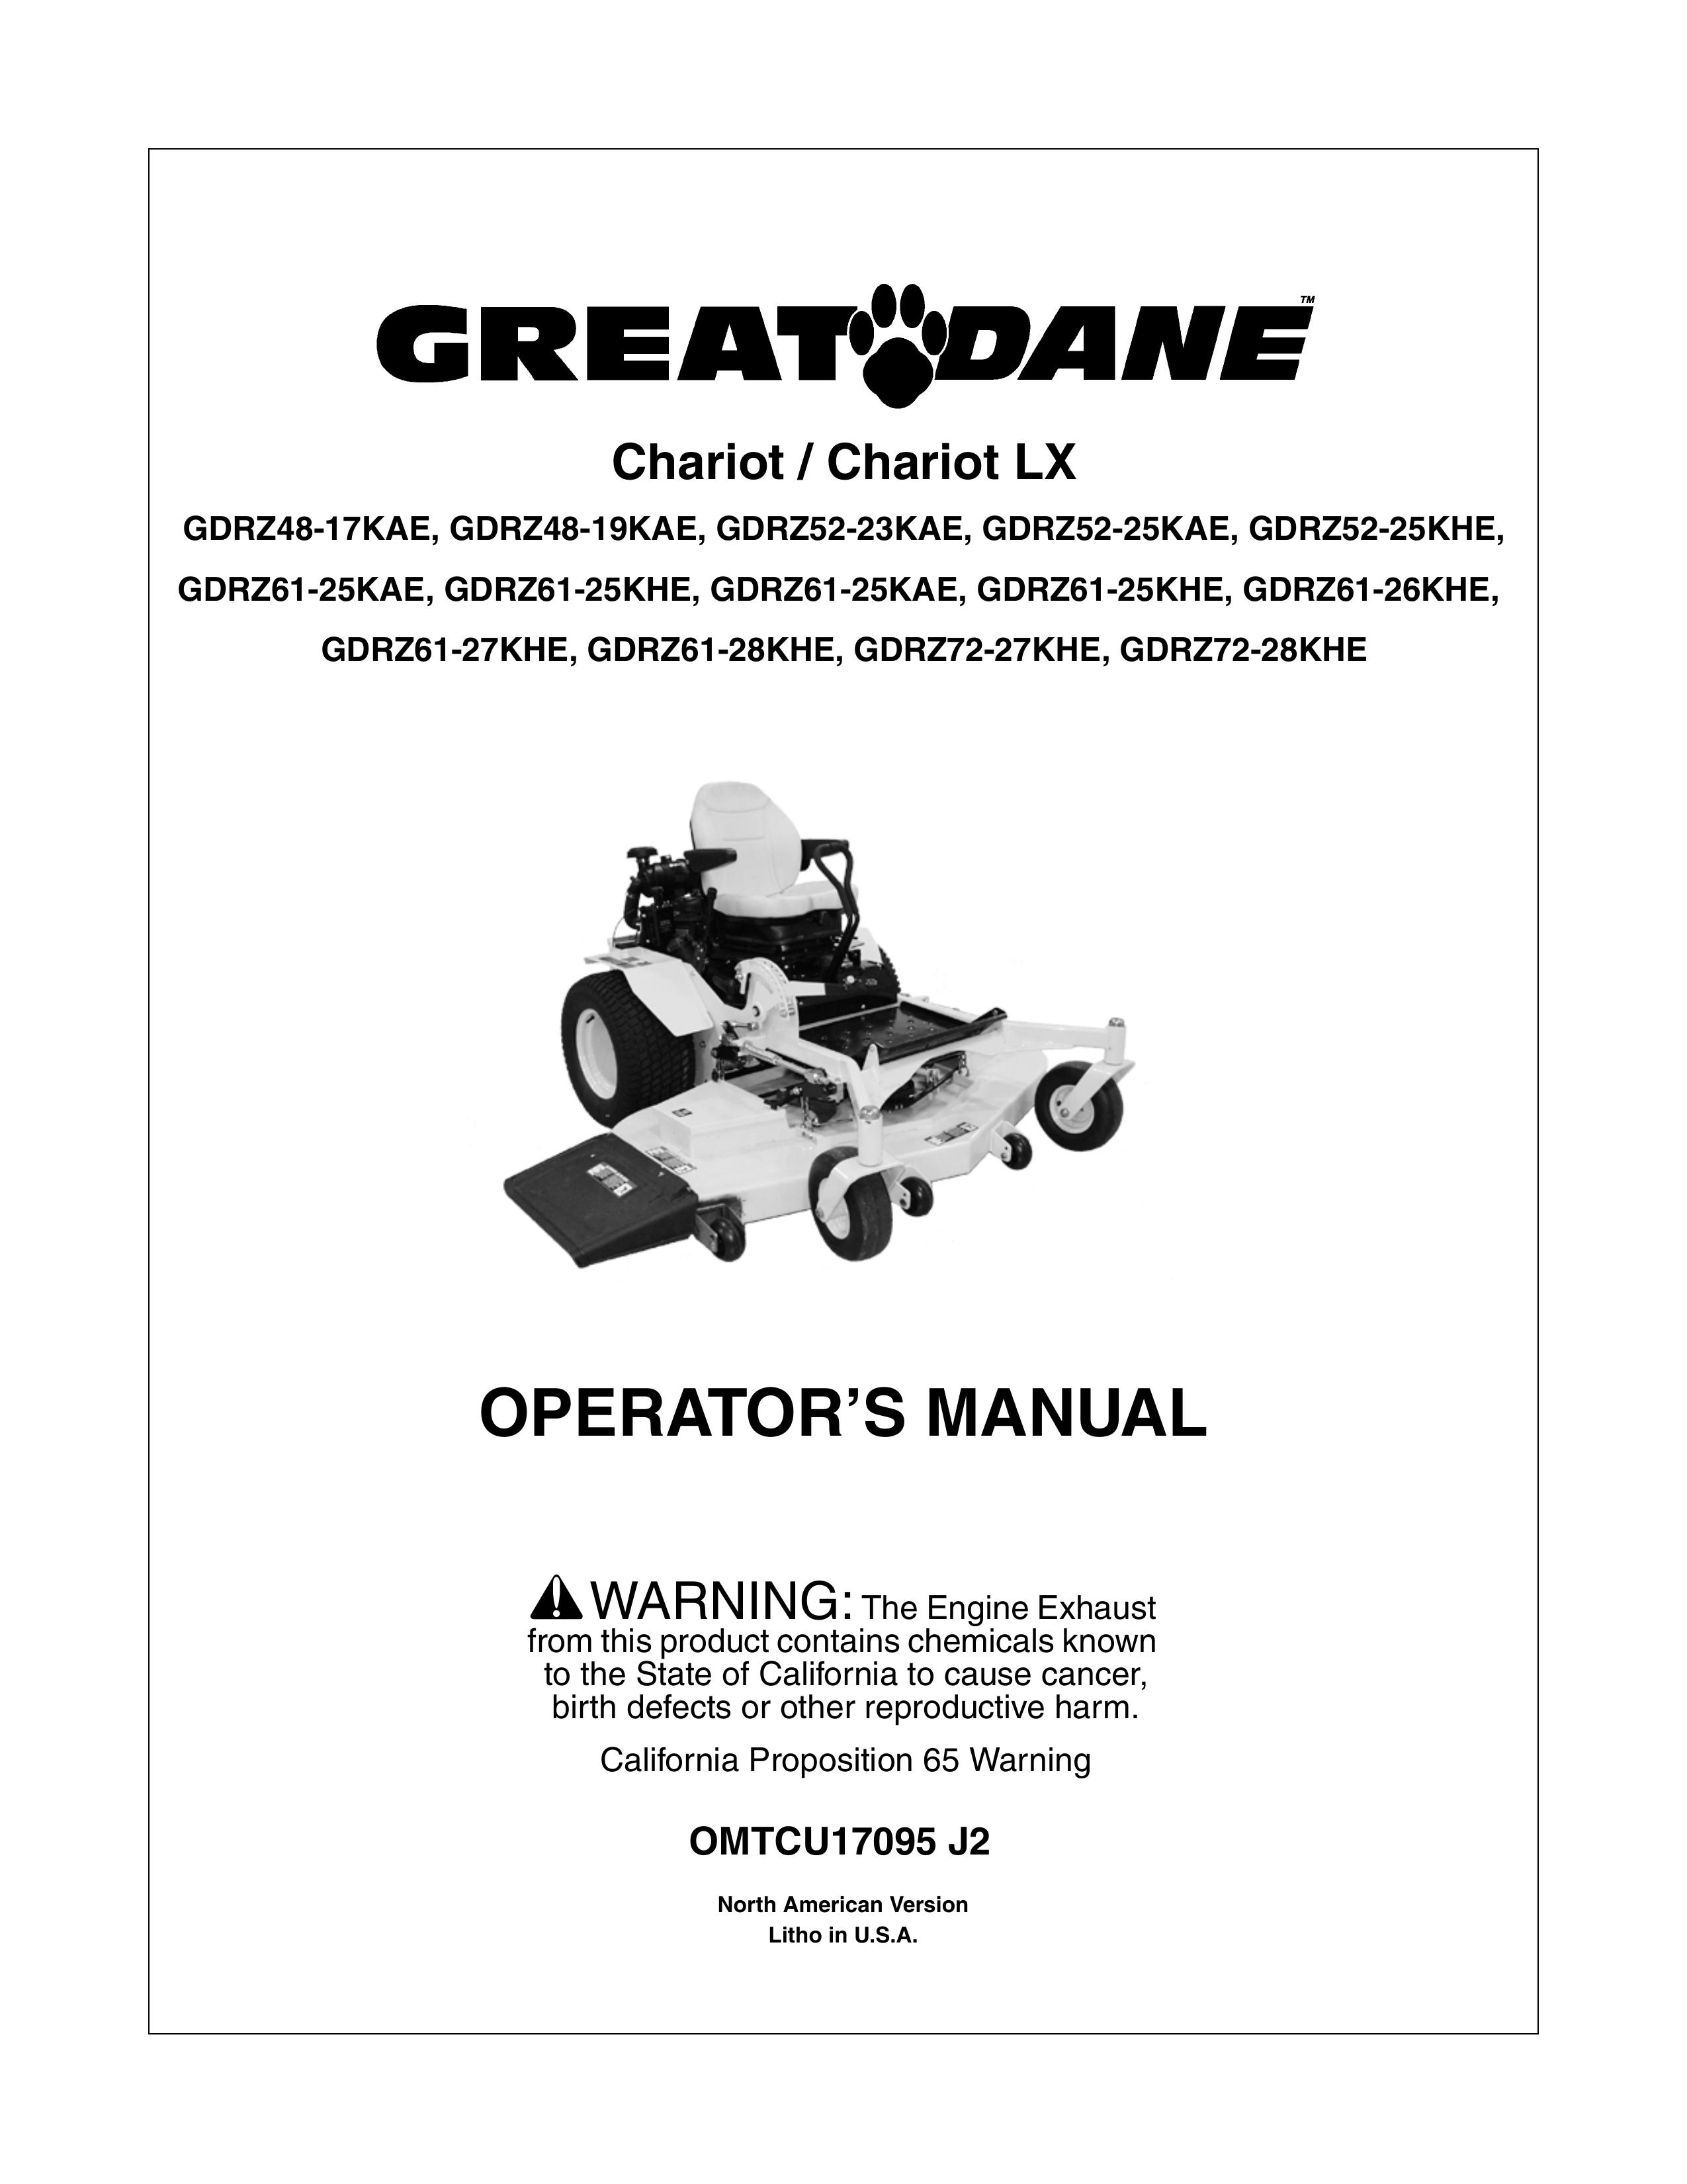 Great Dane GDRZ52-25KAE Lawn Mower User Manual